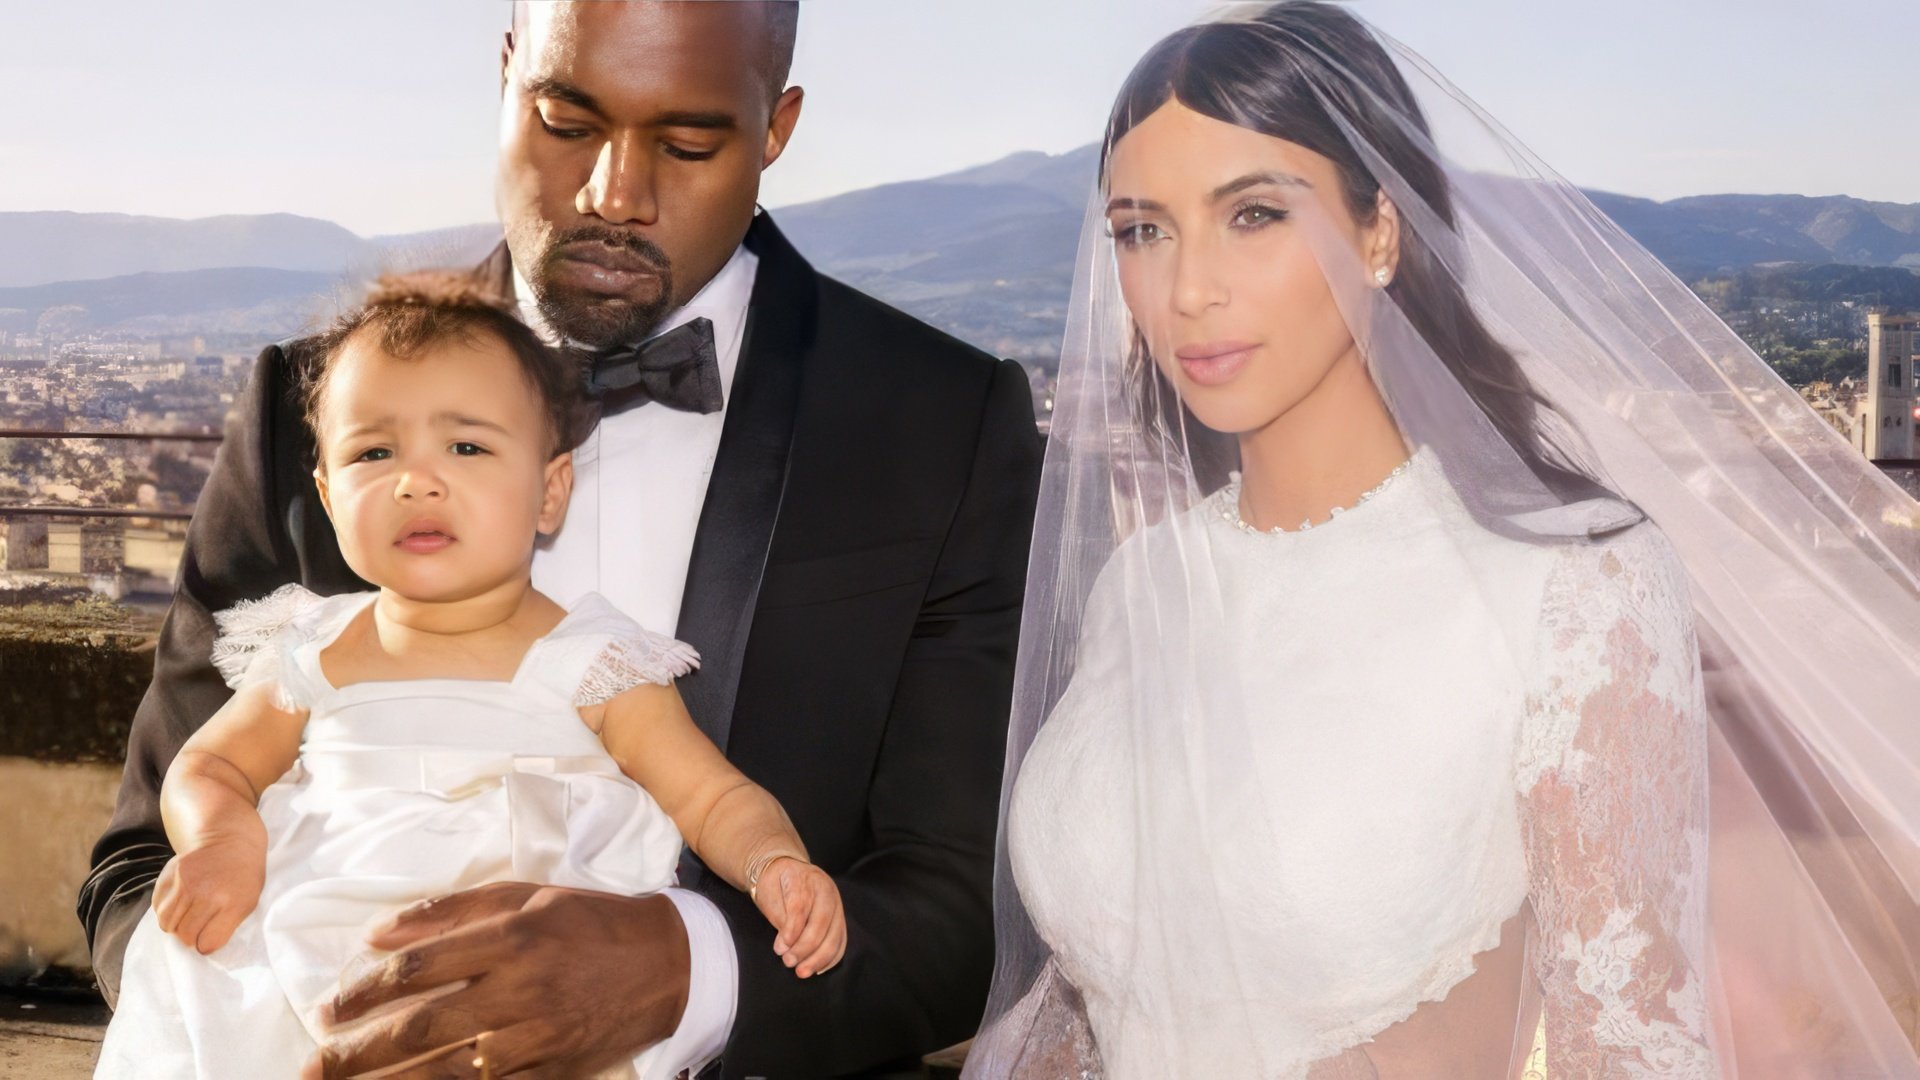 Wedding photo of Kim Kardashian and Kanye West